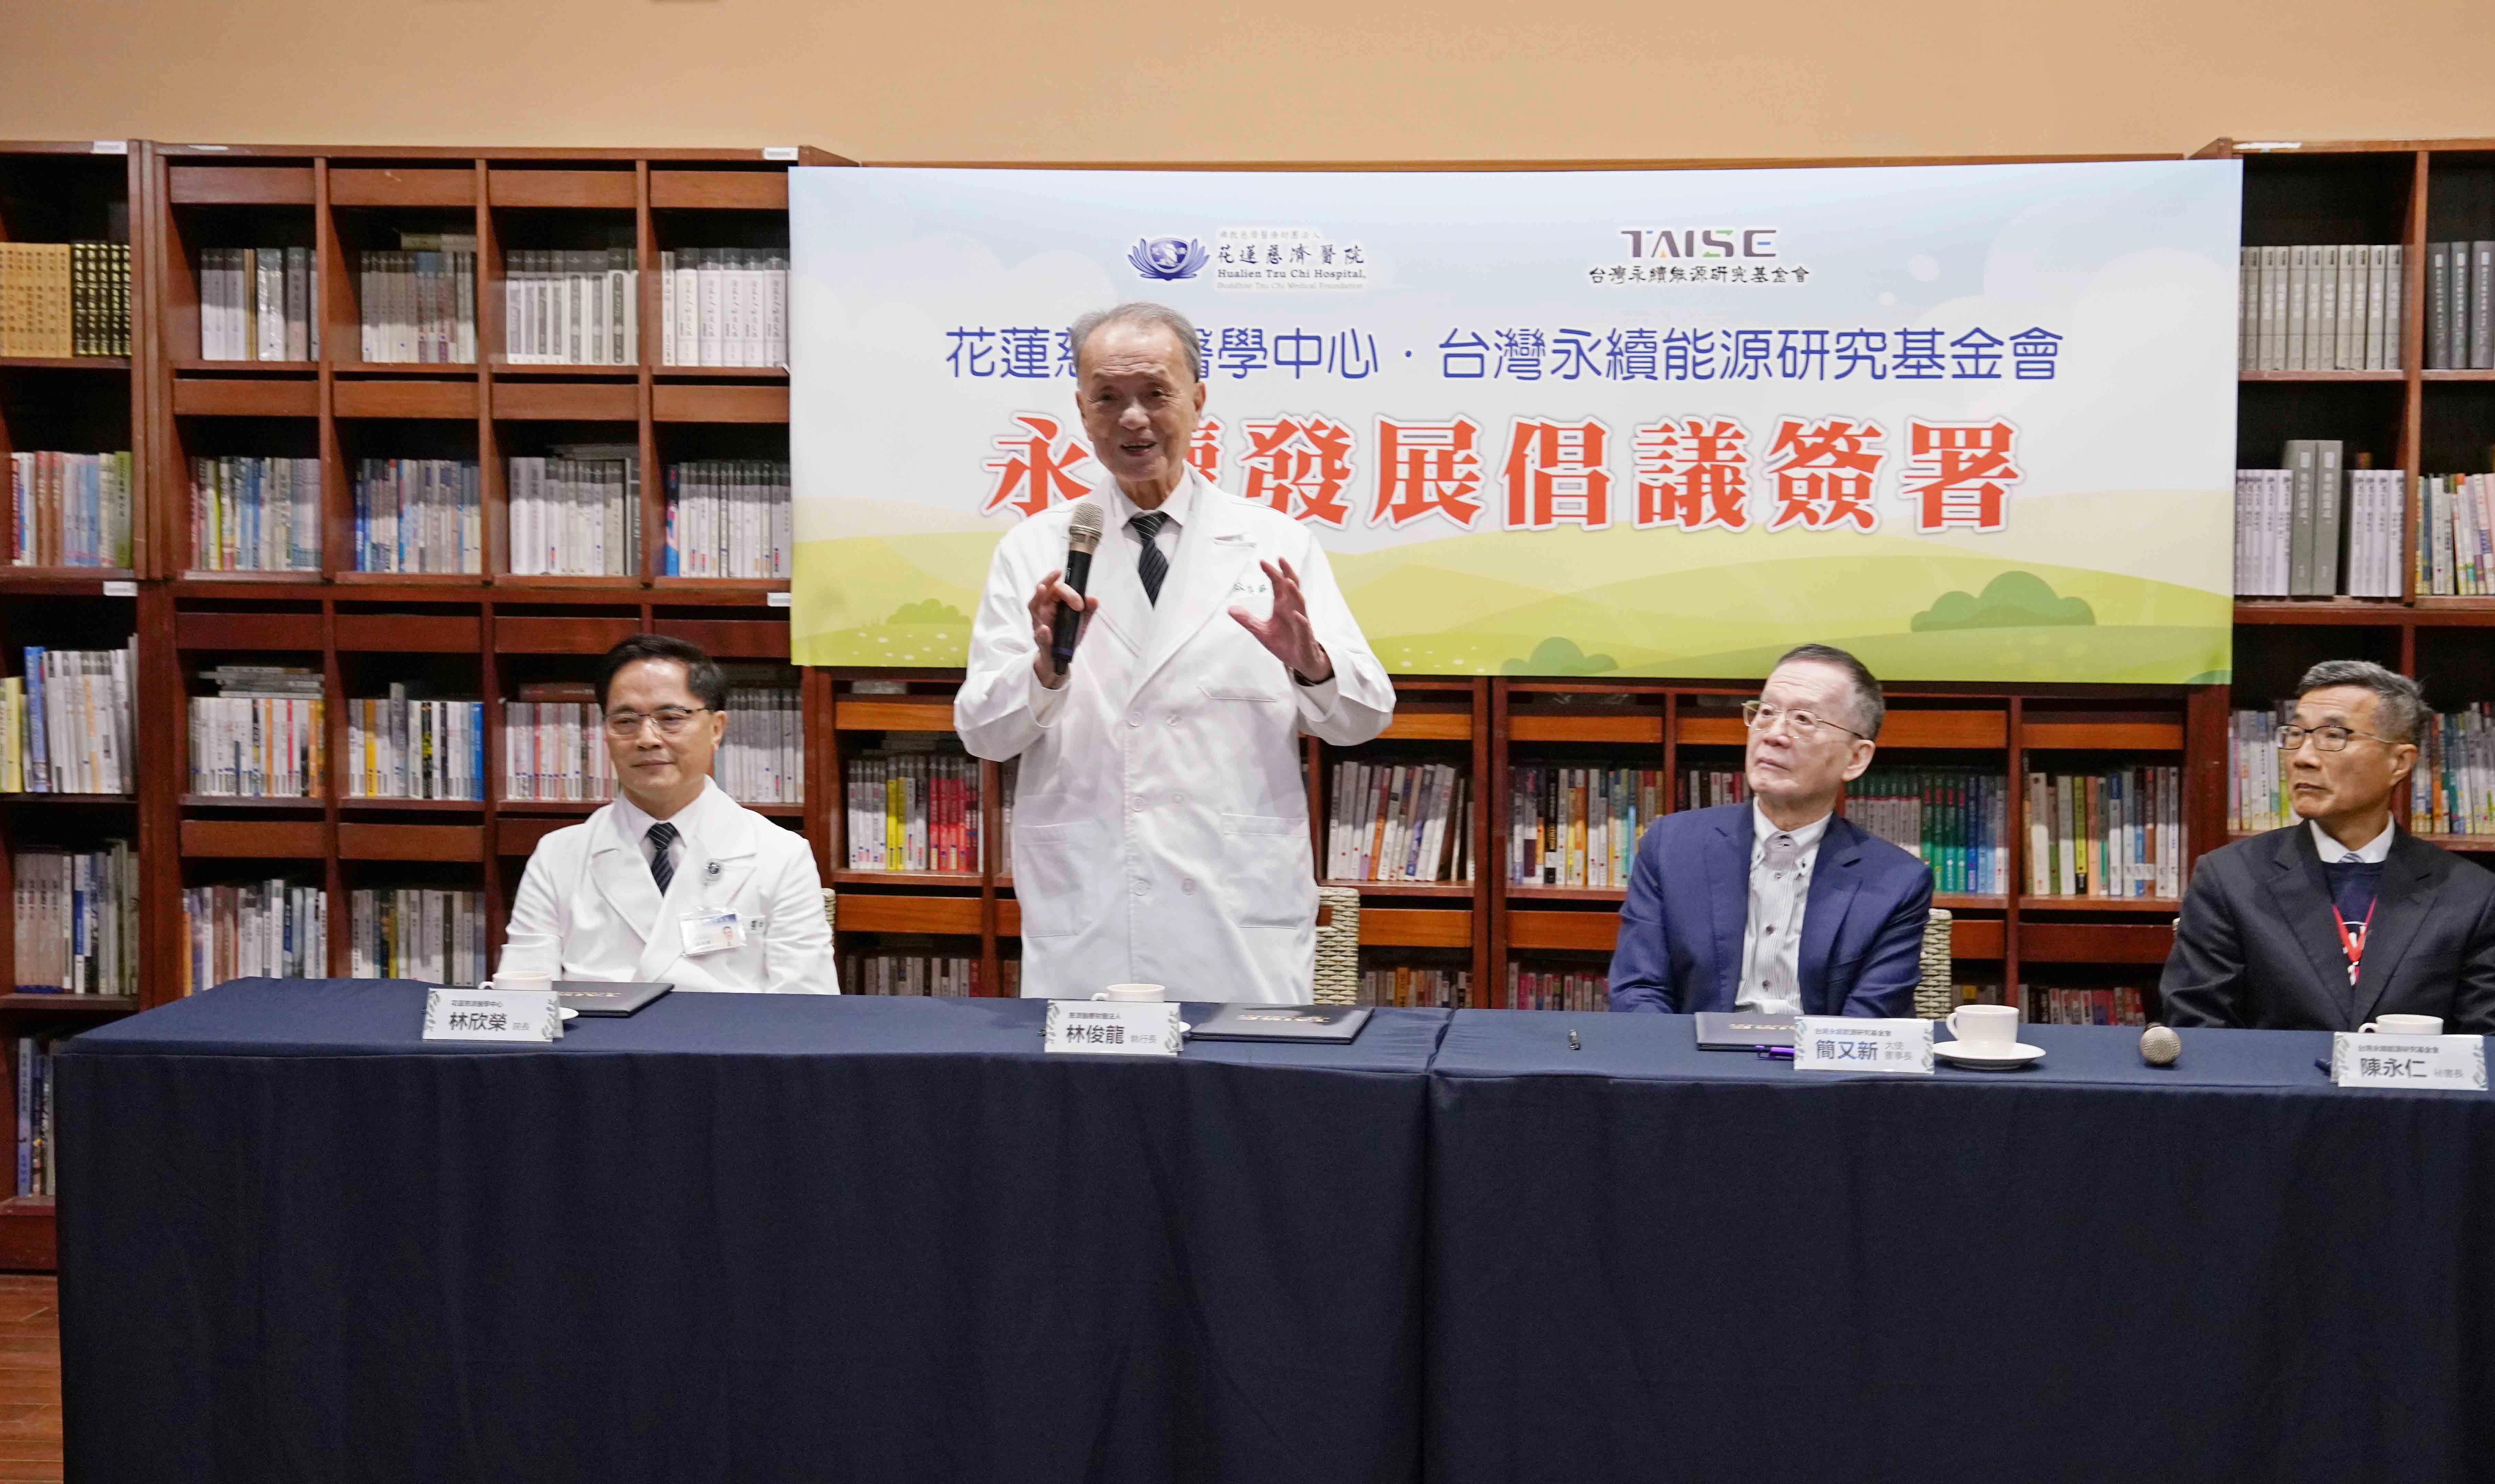 林俊龍執行長表示，雖然零碳排目標非常不容易，但慈濟醫療還是會用心努力。